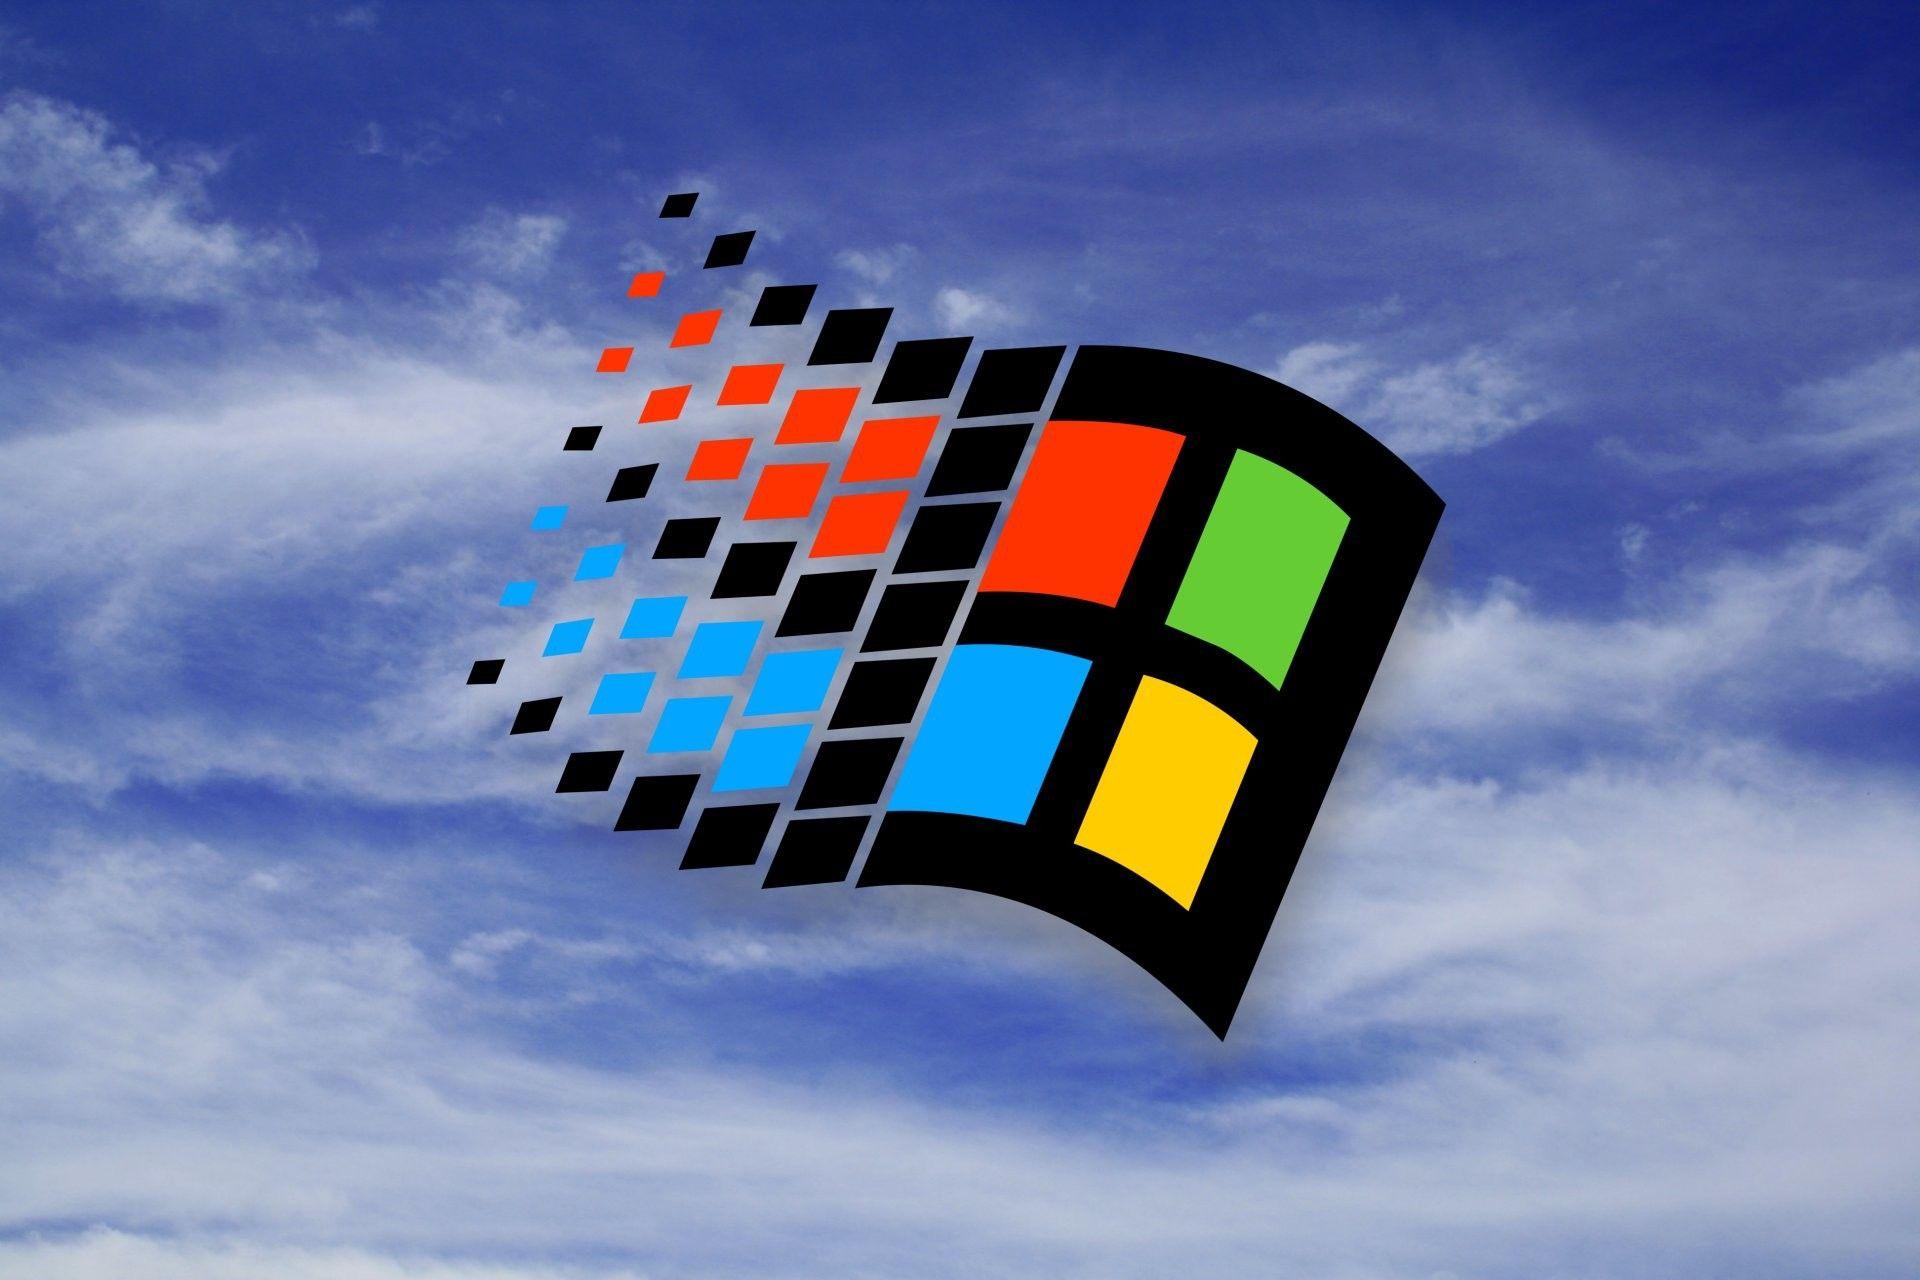 Hình nền mặc định Windows 98: Trong các hệ điều hành cổ điển, Windows 98 đã được biết đến như là cao trào của sự đổi mới. Nó có giữ lại được vẻ đẹp của mình trong rất nhiều năm. Lựa chọn một hình nền mặc định từ Windows 98 sẽ khiến bạn nhớ về thời điểm đó. Hãy ngắm nhìn các hình ảnh tuyệt đẹp của nó.